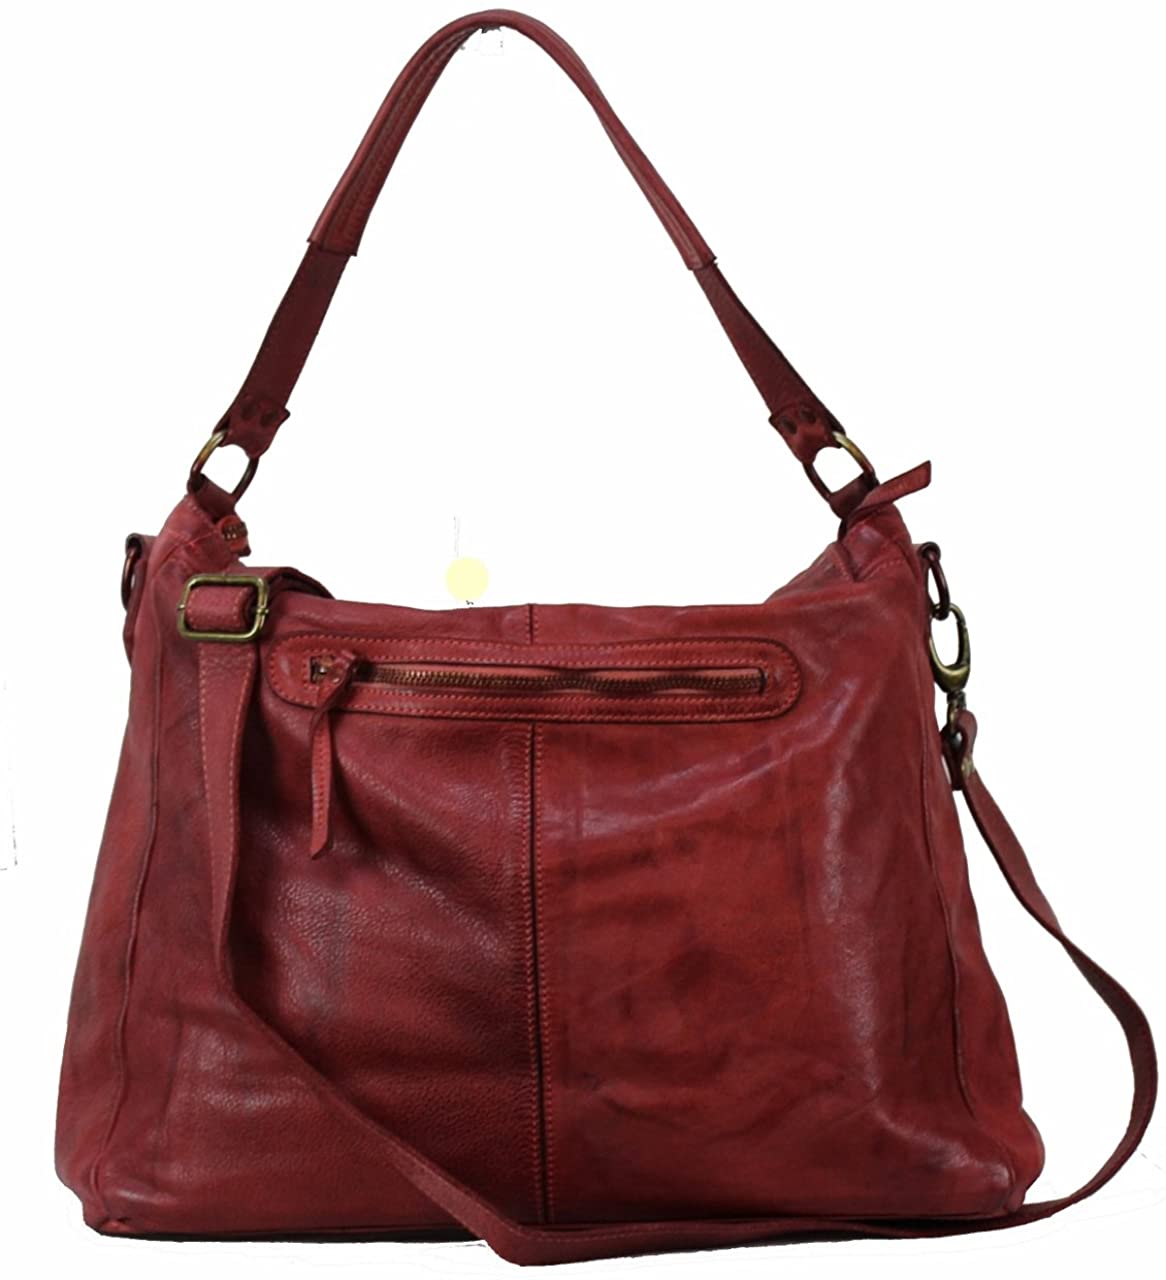 BOZANA Bag Jule rosso Italy Designer Messenger Damen Handtasche Schultertasche Tasche Schafsleder Shopper Neu